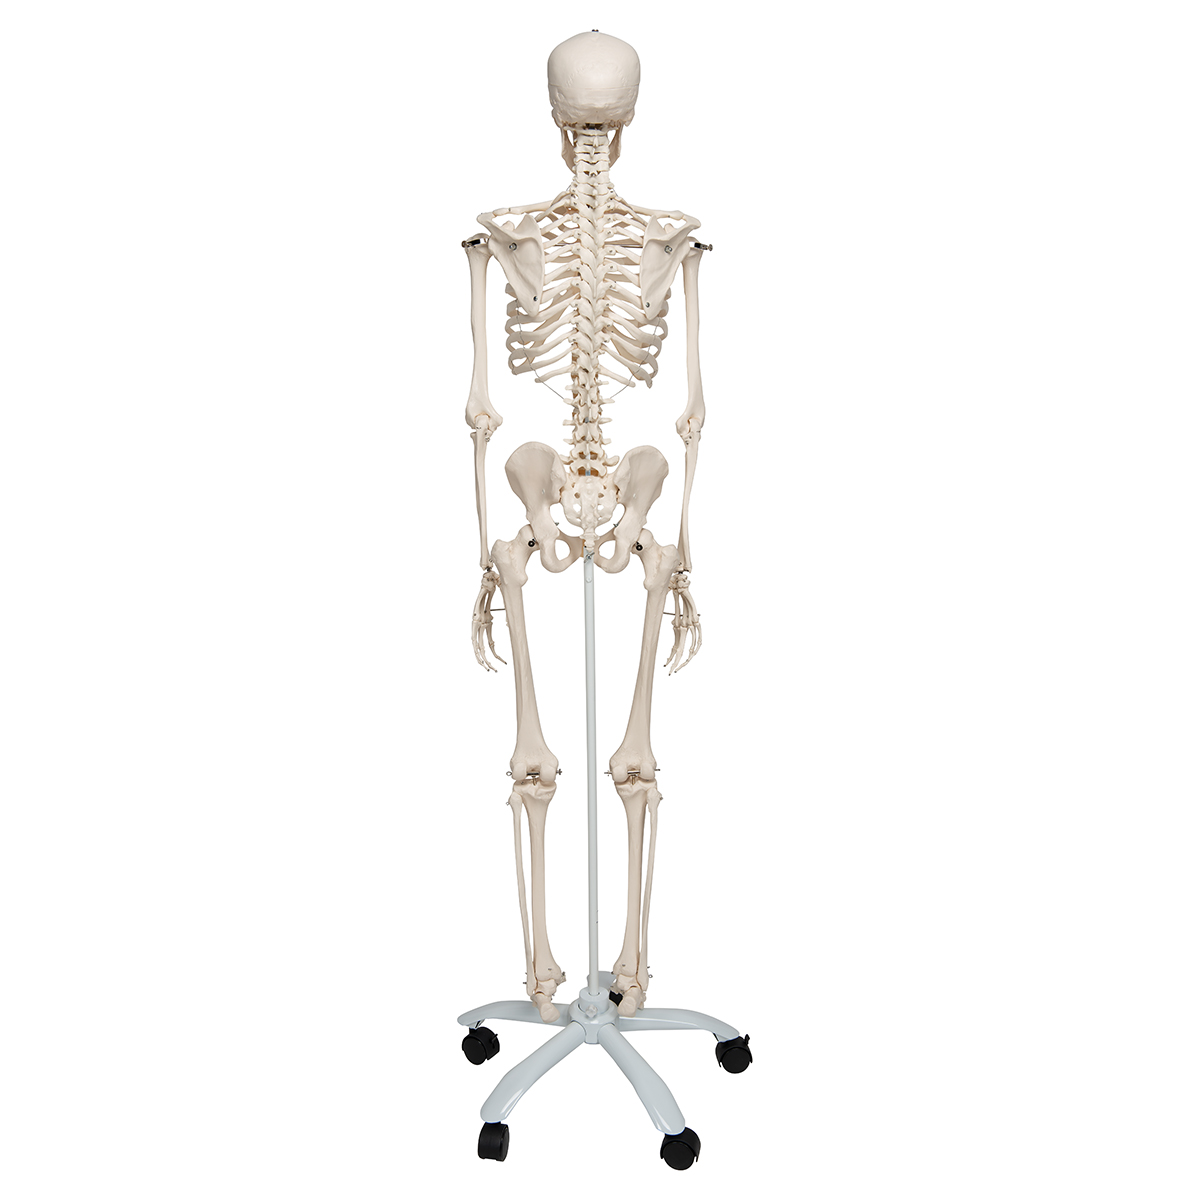 经典人体骨骼模型- 1020171 - A10 - 全副骨骼架模型- 3B Scientific